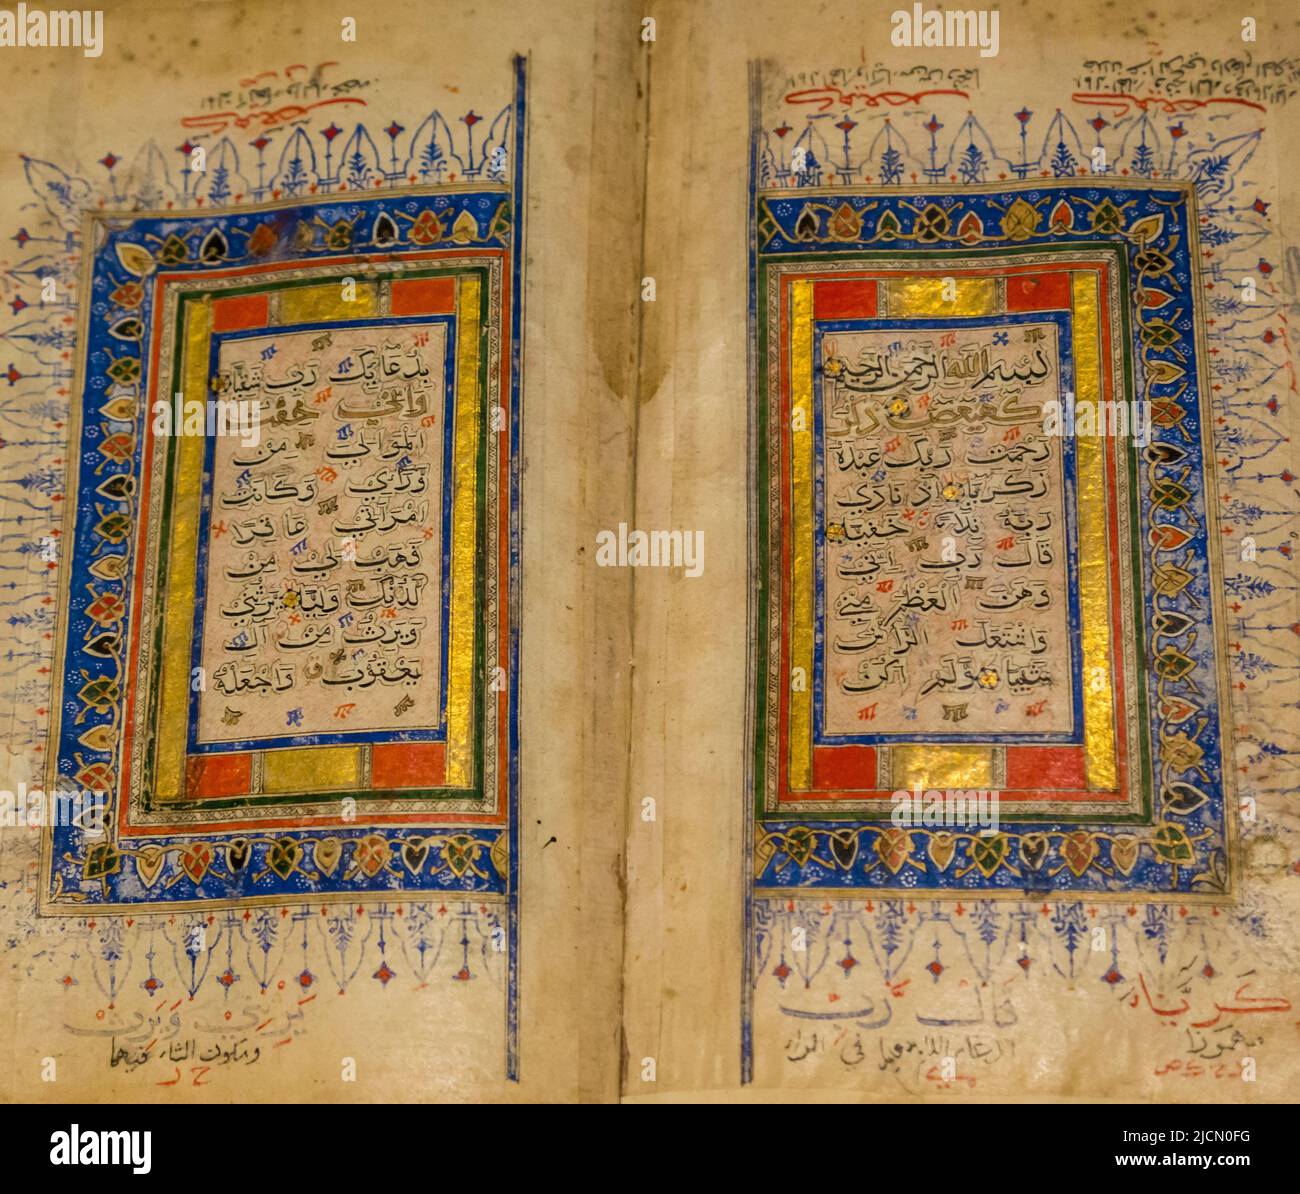 Indischer Koran, 15.. Jahrhundert. Dieses Buch verwendet die Schrift von Bihari. Asian Civilizations Museum, Republik Singapur Stockfoto